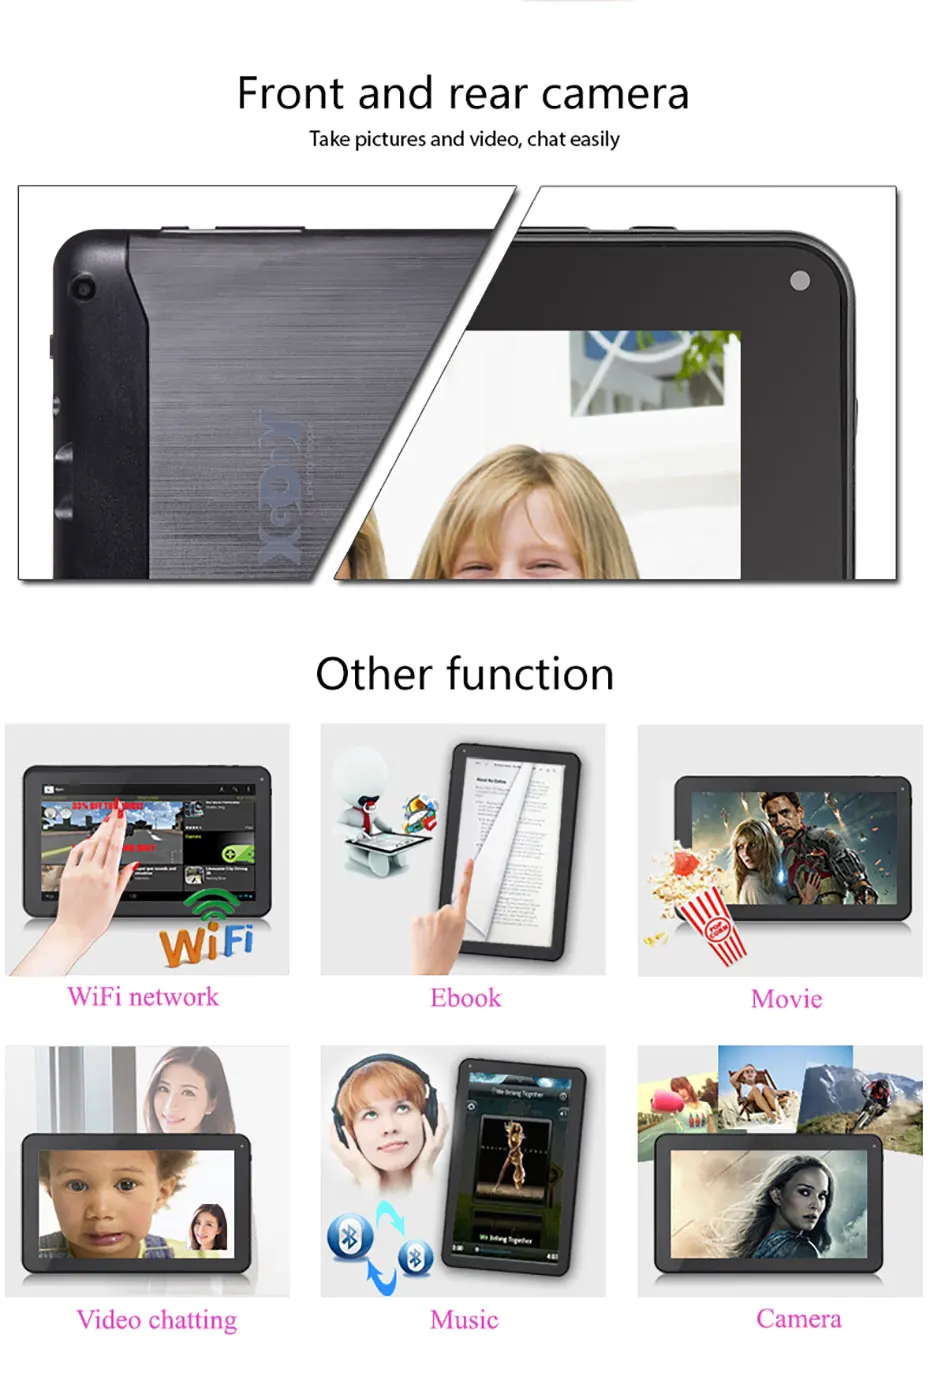 XGODY 9 дюймов планшетный ПК Android 6,0 1G+ 16G четырехъядерный 800*480 Двойная камера Wi-Fi Bluetooth планшет планшеты с силиконовый чехол-держатель